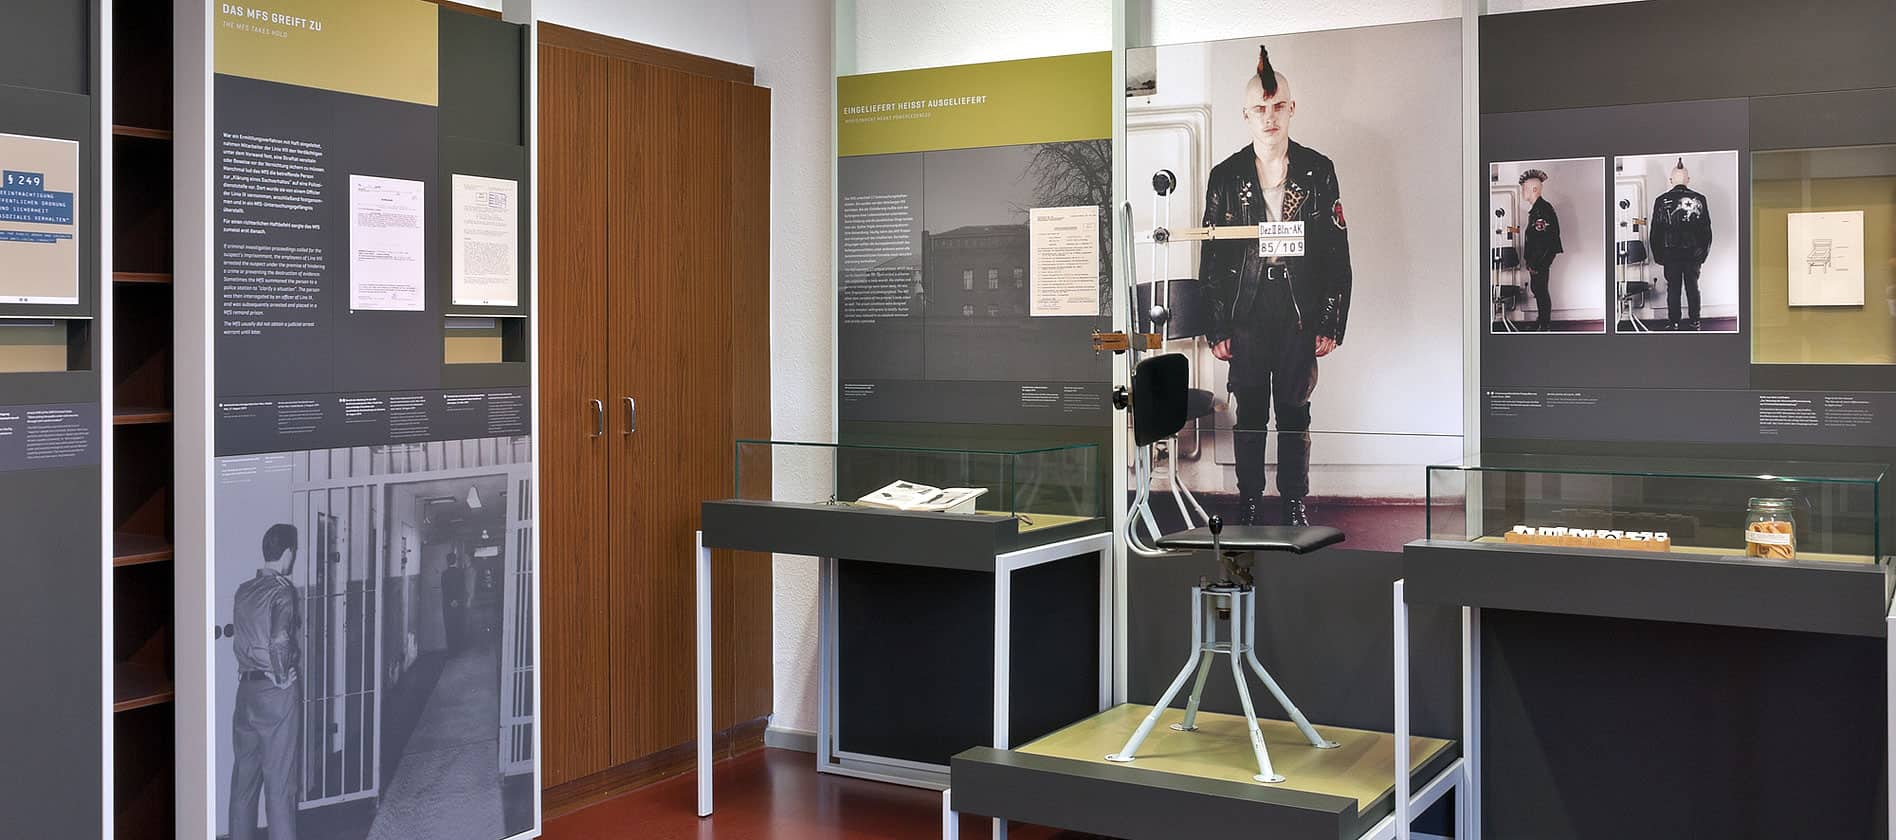 Museum display of german soldier